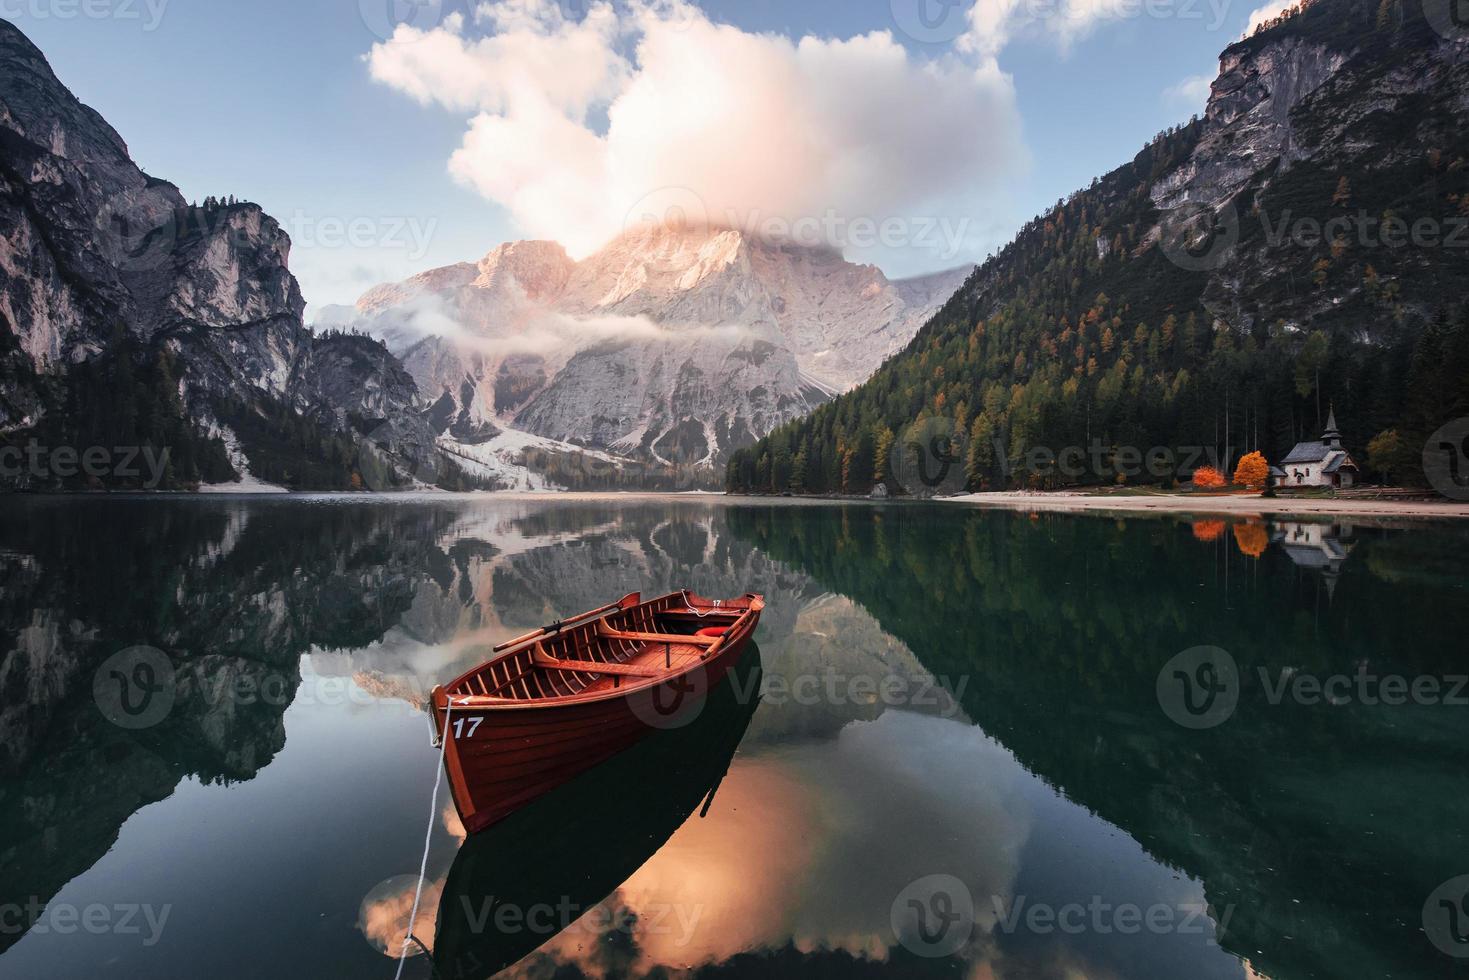 herrliche Landschaft. Holzboot auf dem Kristallsee mit majestätischem Berg dahinter. Spiegelung im Wasser. Kapelle ist an der rechten Küste foto